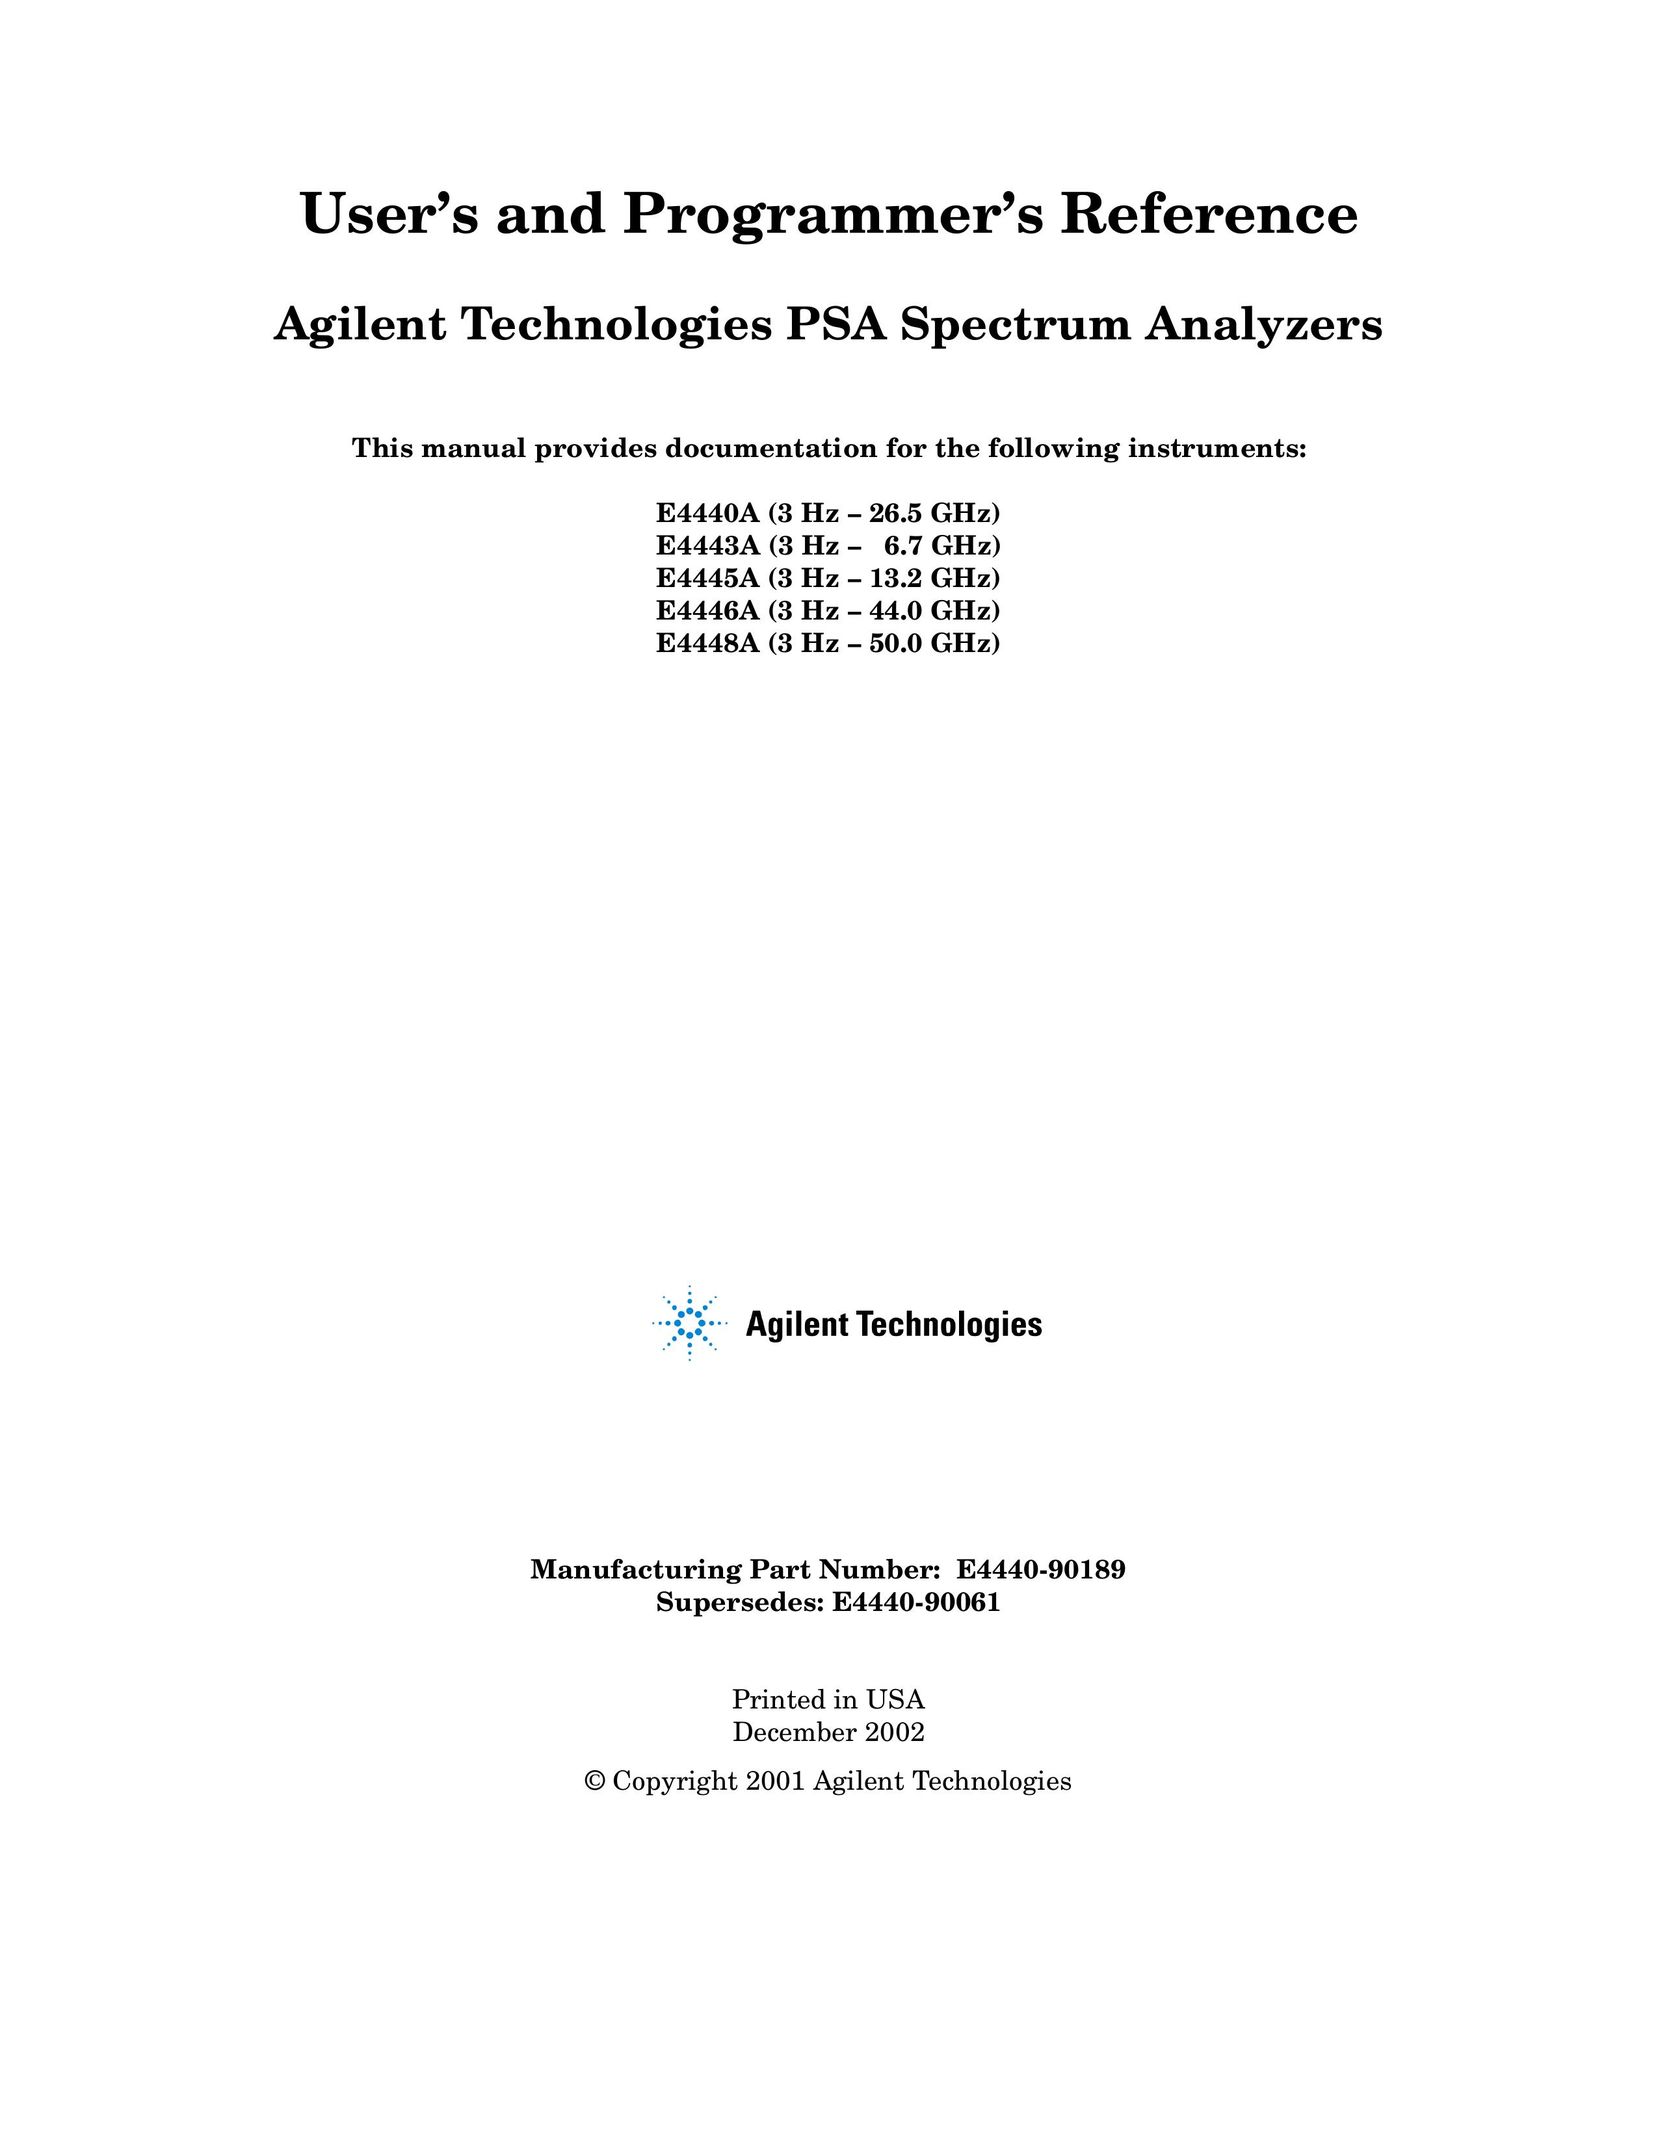 Agilent Technologies E4445A Saw User Manual